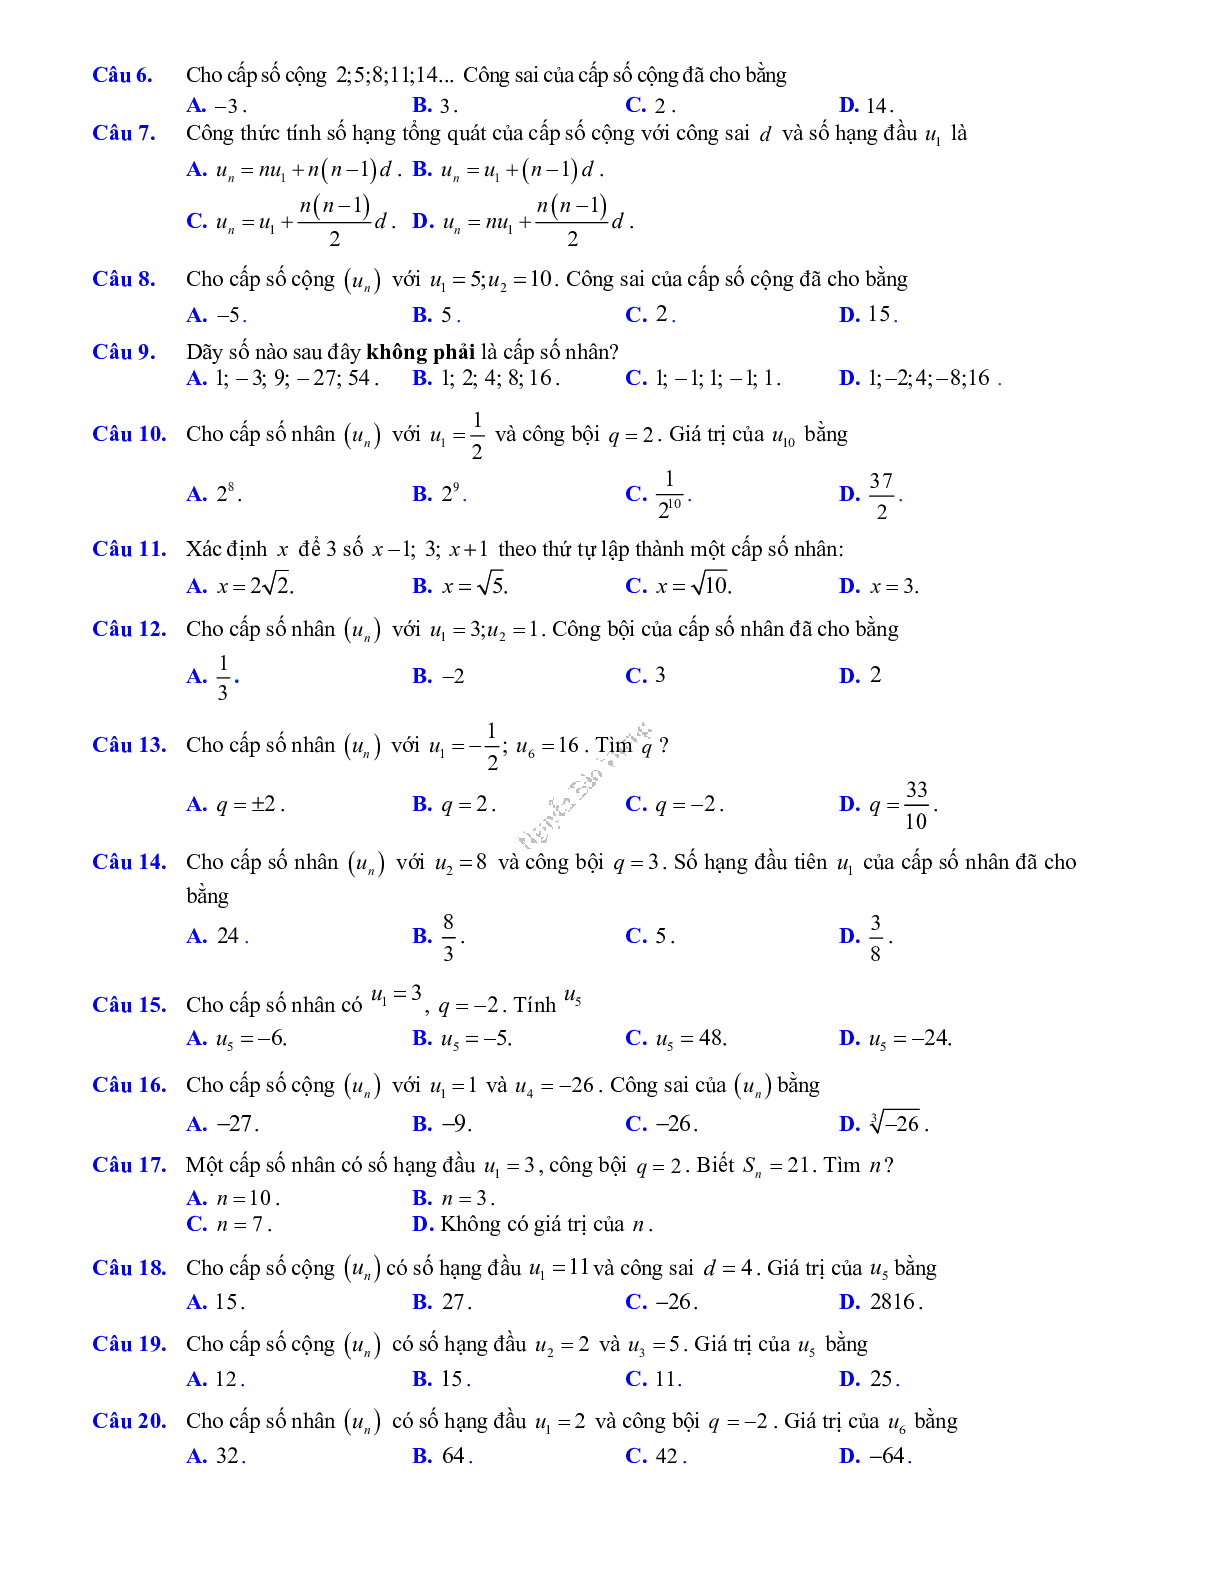 Phương pháp giải về Phép đếm, cấp số cộng và cấp số nhân 2023 (lý thuyết và bài tập) (trang 4)